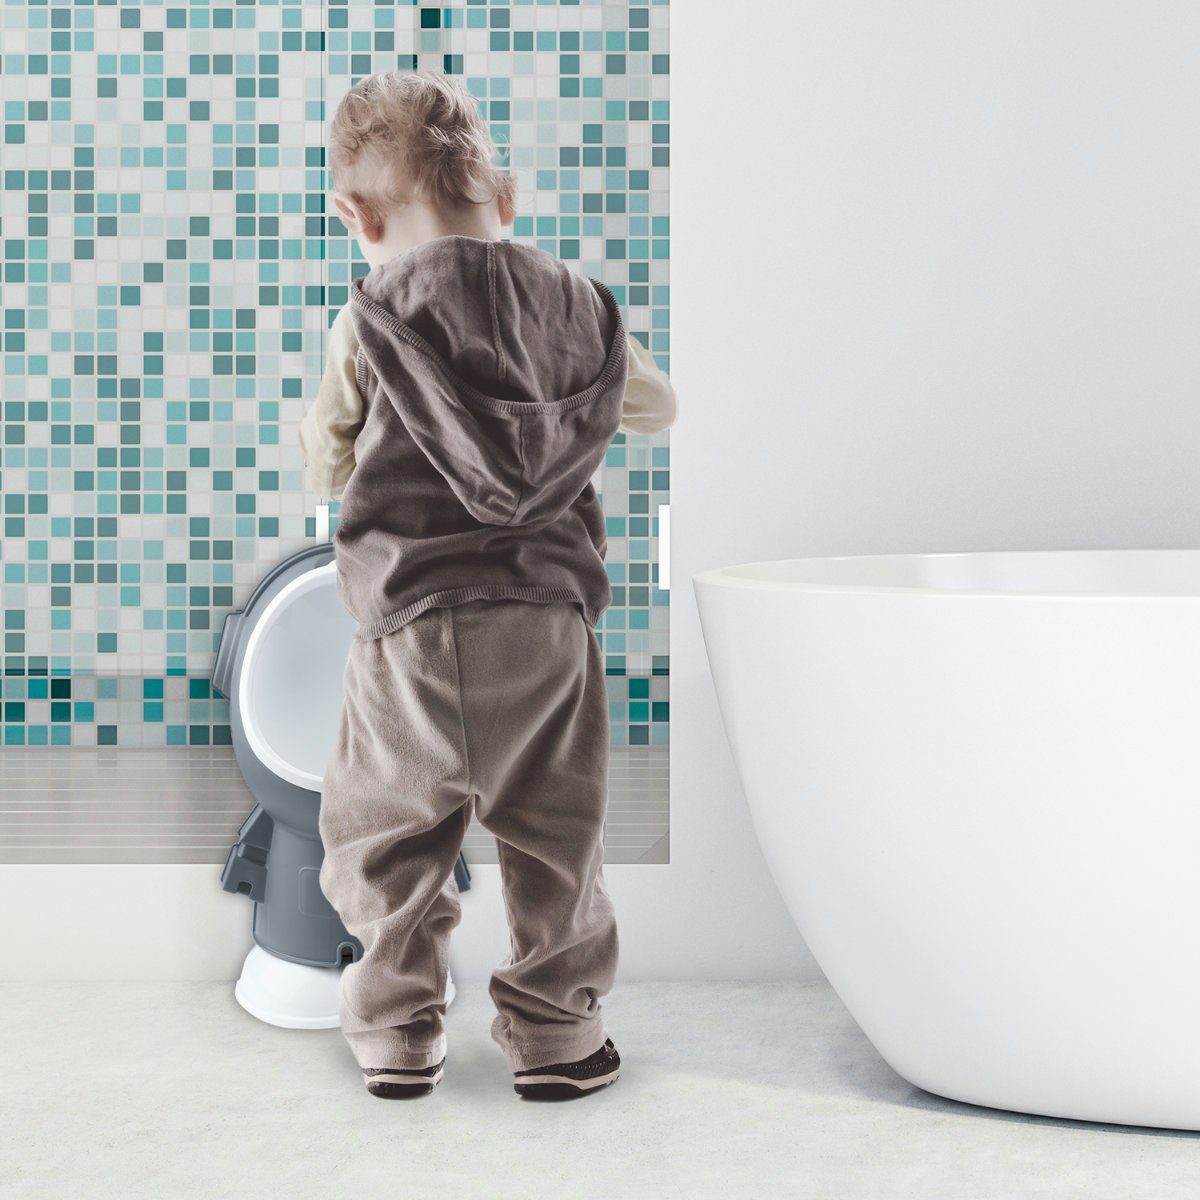 Höhenverstellbar Pinkel-Toilette zum all Übungs-Klo, Kids Üben), Grau Kinder-Pissoir (Urinal Baby Toiletten-Trainer Töpfchen United